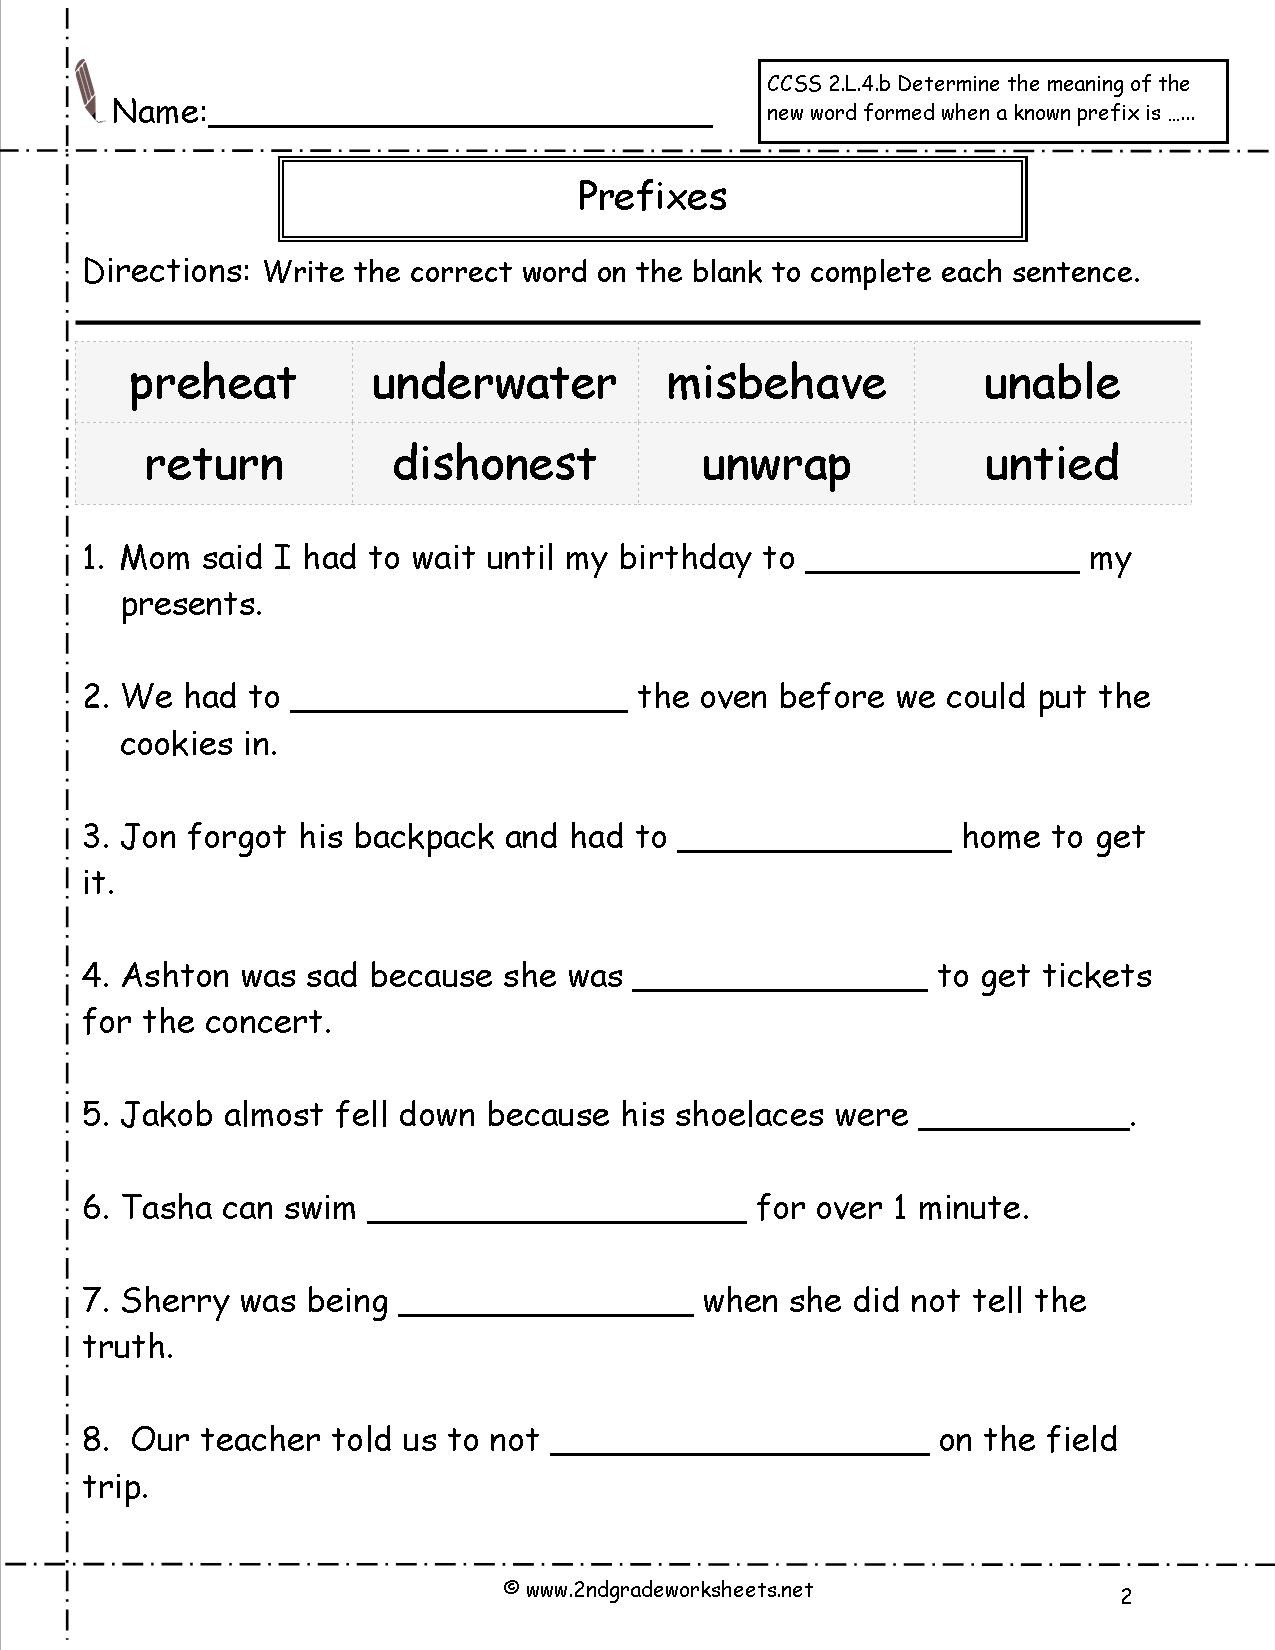 Prefix Worksheet 4th Grade Second Grade Prefixes Worksheets